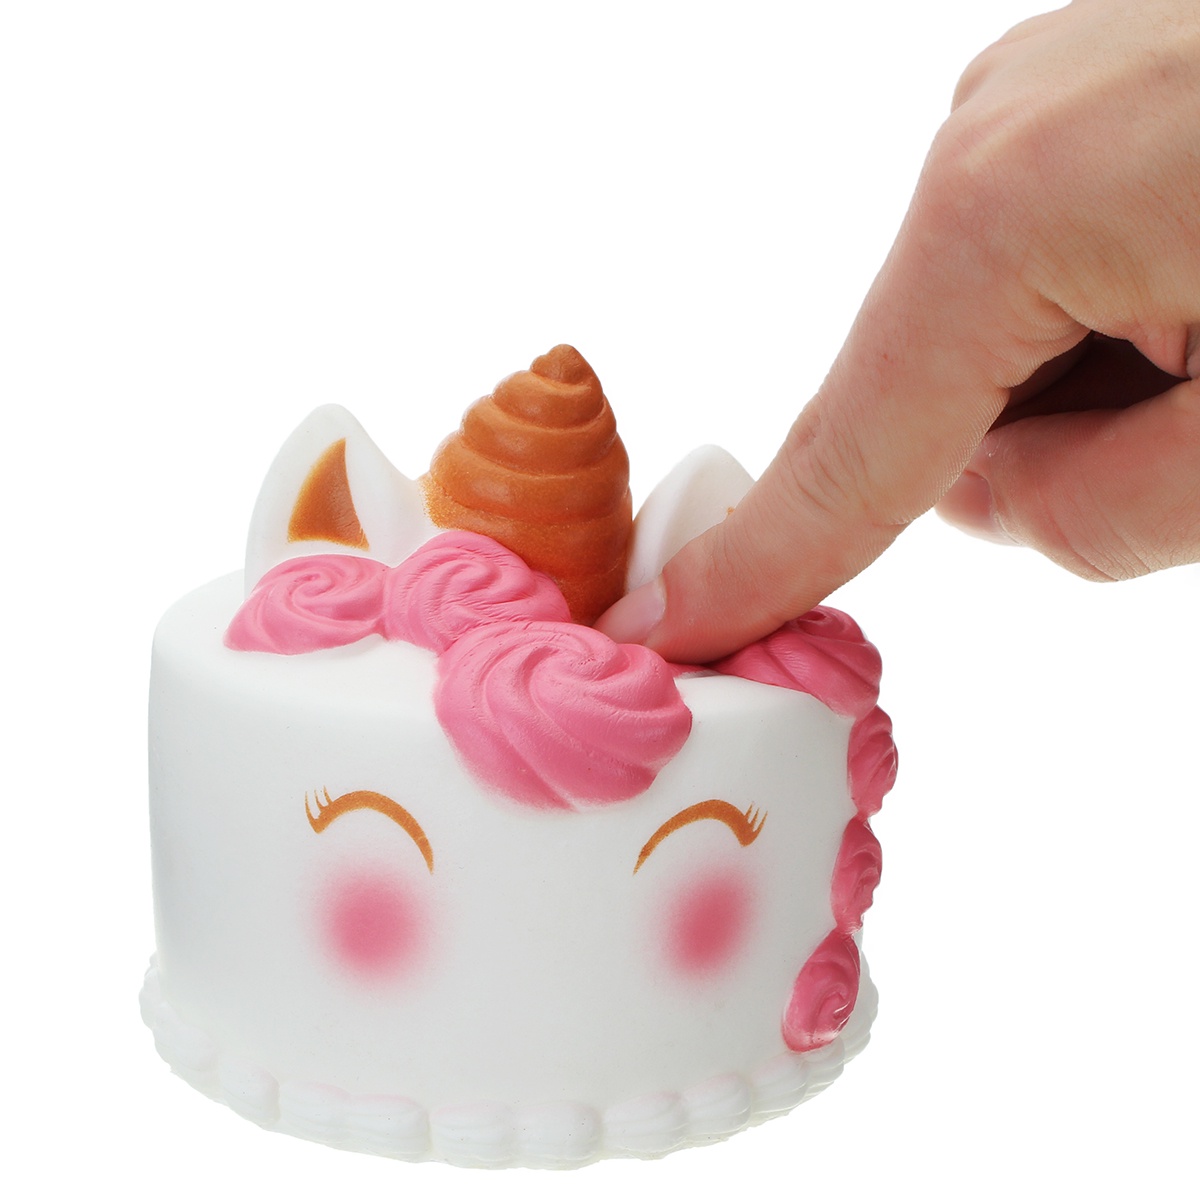 фото Игрушка антистресс Essa Toys Торт-единорог белый, розовый